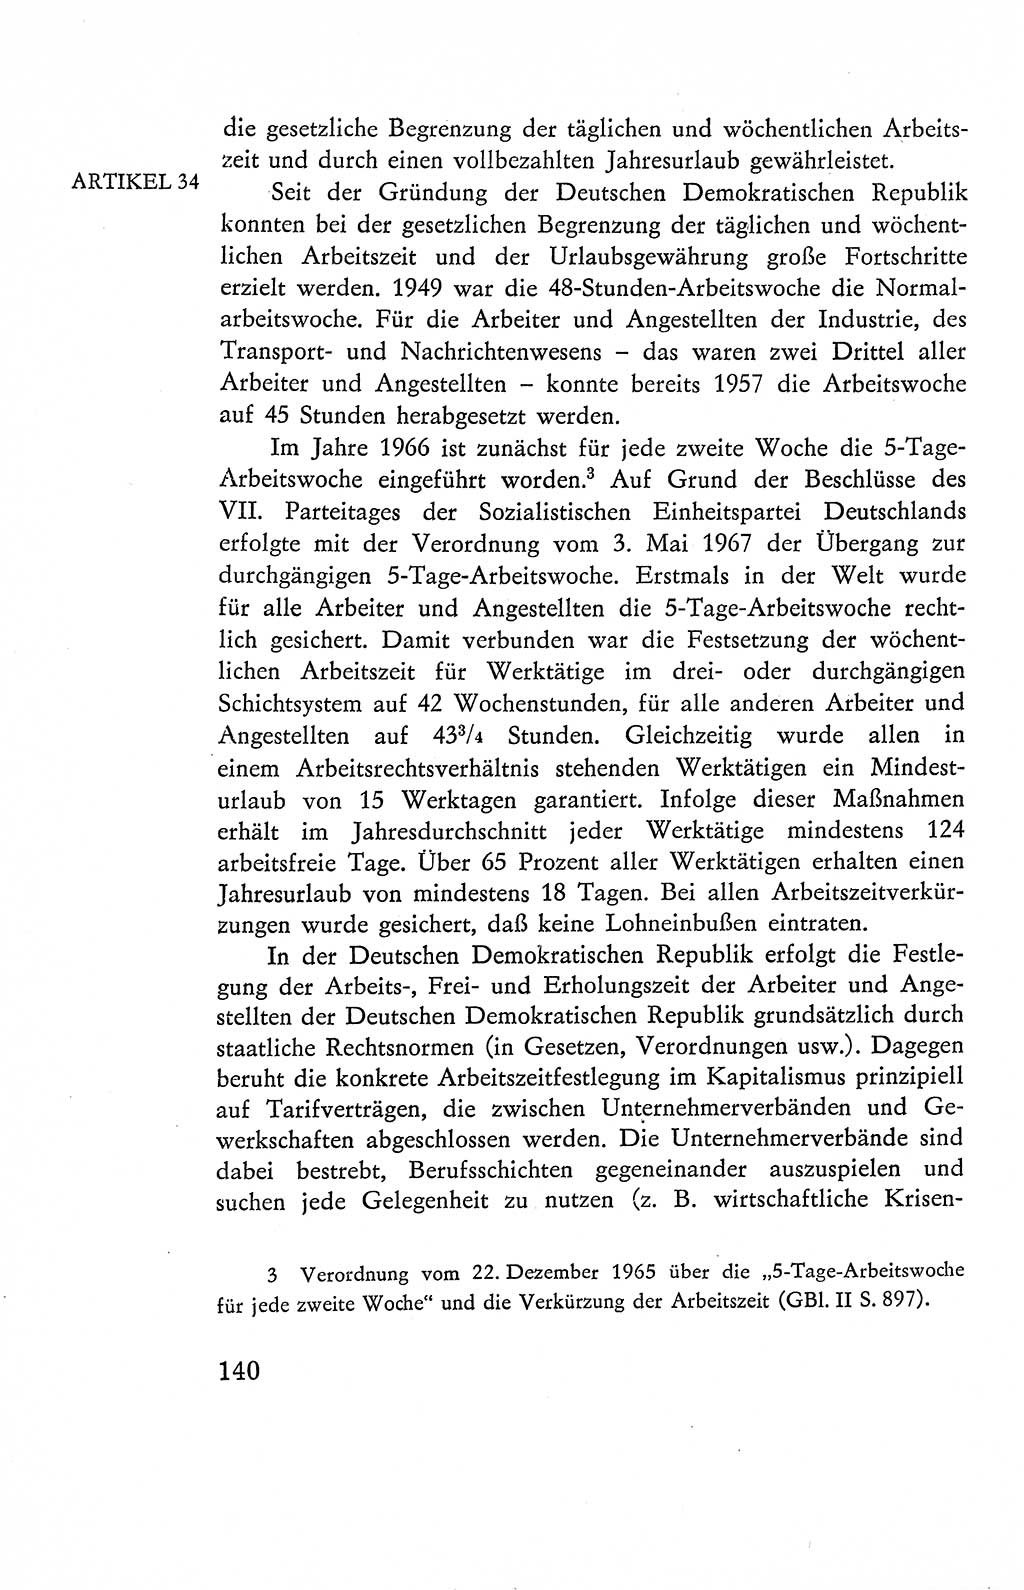 Verfassung der Deutschen Demokratischen Republik (DDR), Dokumente, Kommentar 1969, Band 2, Seite 140 (Verf. DDR Dok. Komm. 1969, Bd. 2, S. 140)